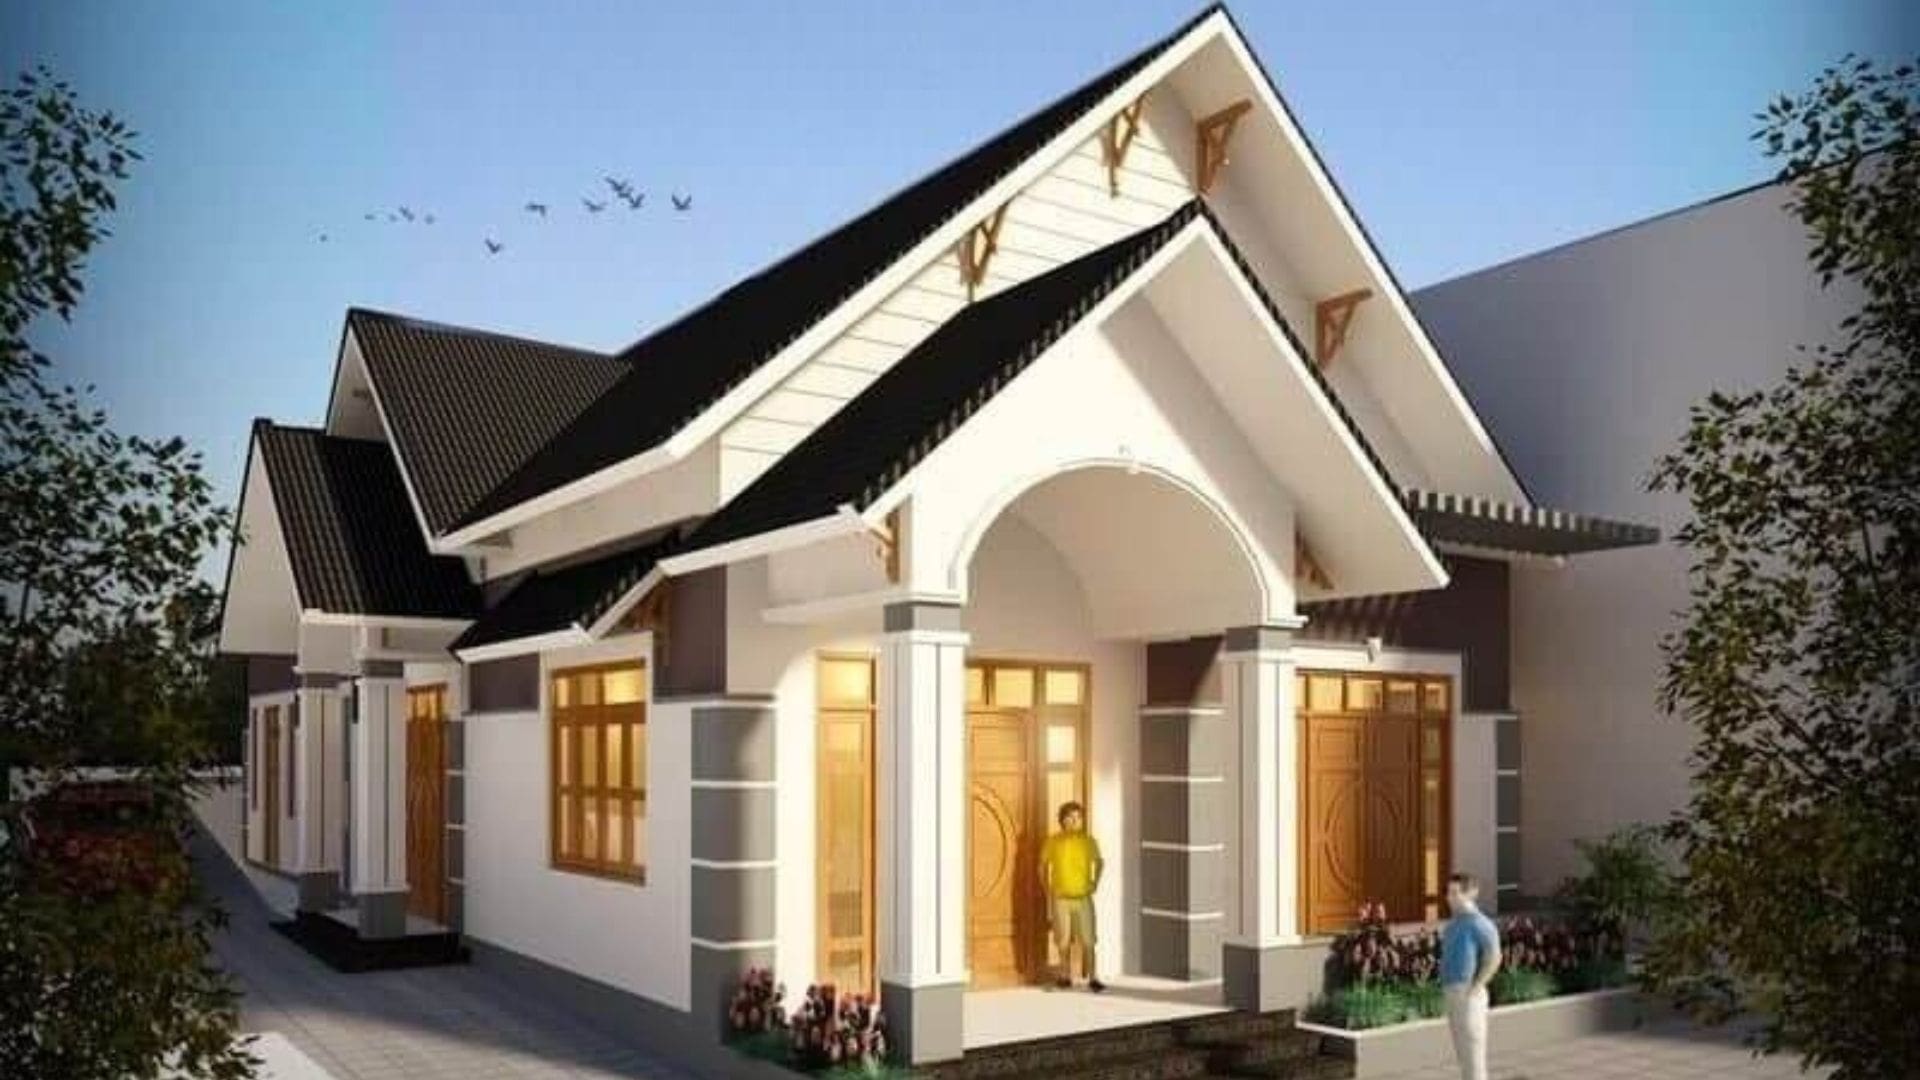 Công ty xây dựng GAM - Địa chỉ thiết kế nhà đẹp Đà Nẵng uy tín